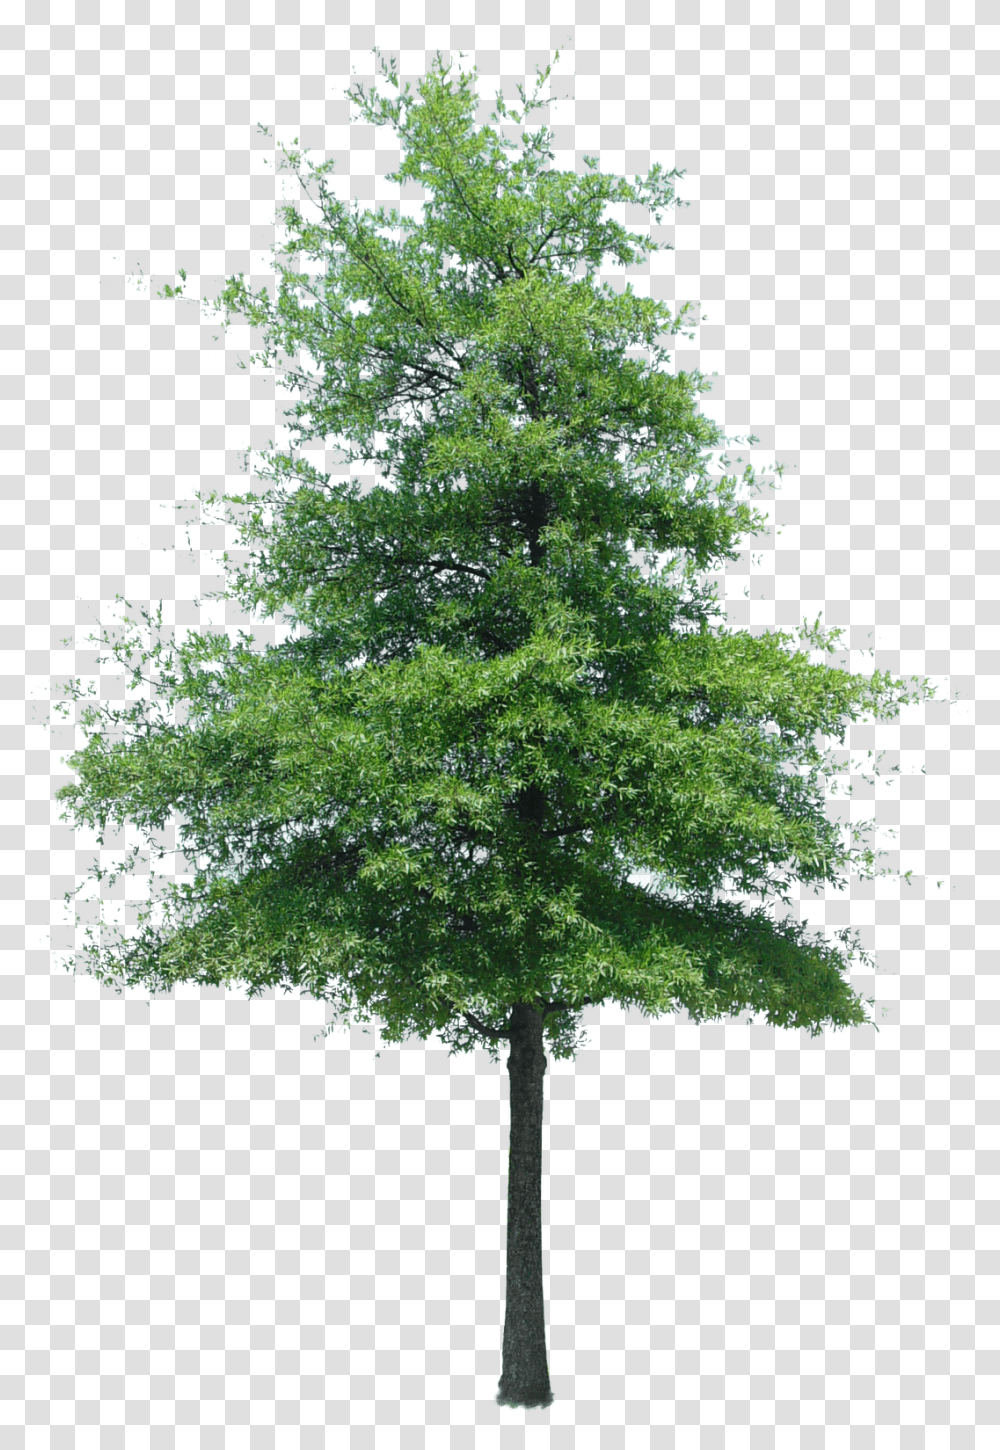 Download Cutout Tree Photoshop Texture Cut Out Tree Photoshop, Plant, Maple, Oak, Conifer Transparent Png